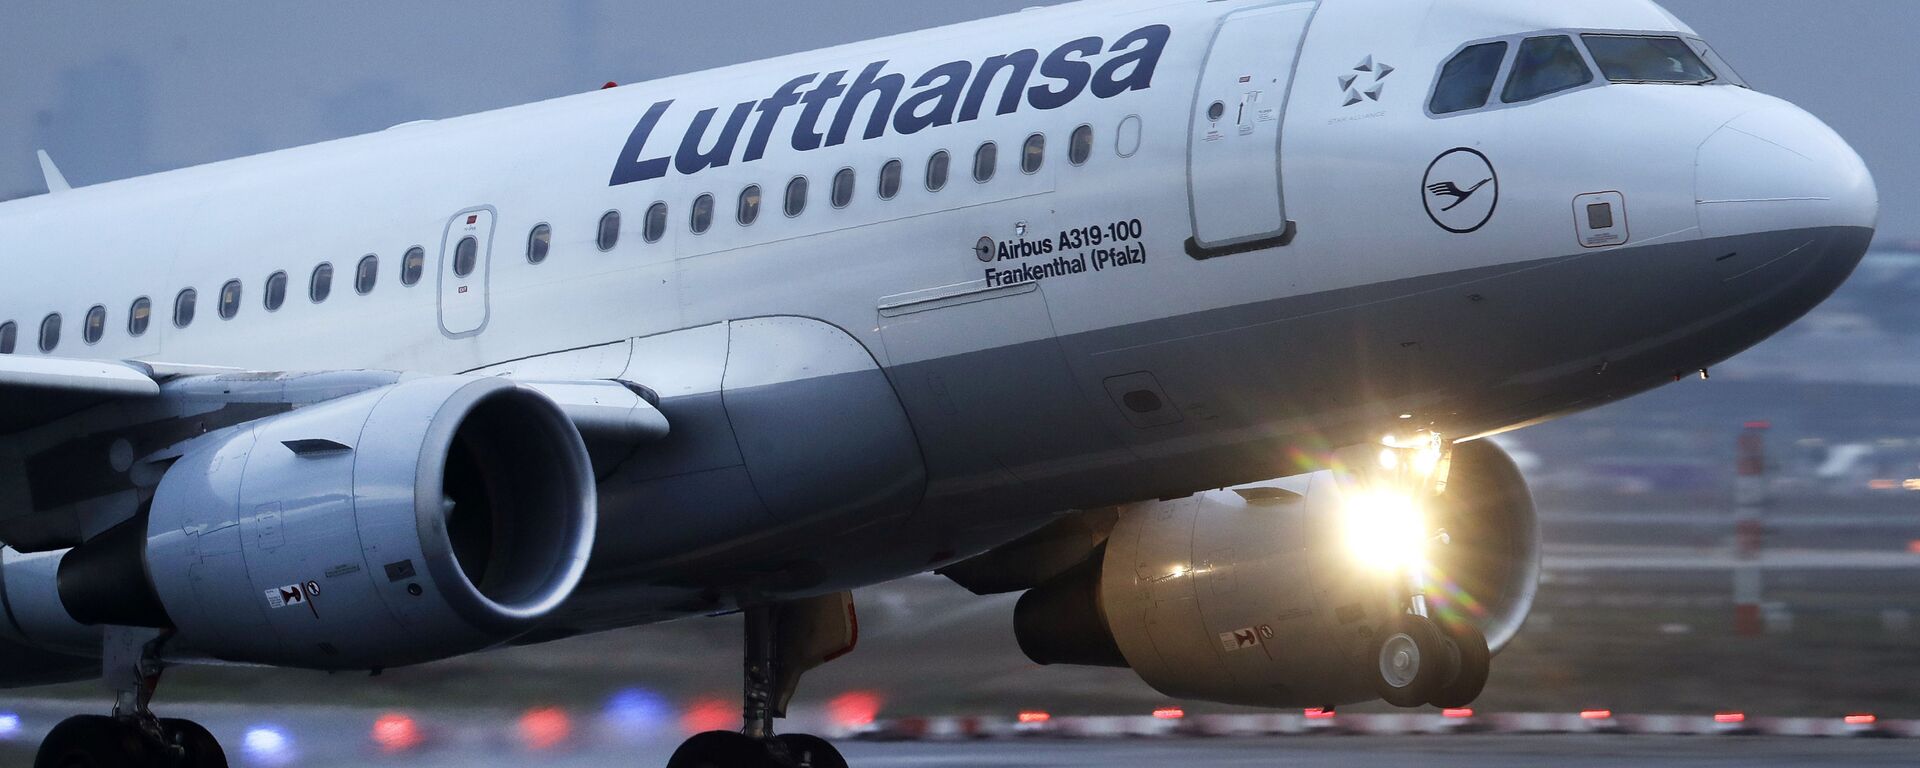 Пассажирский самолет авиакомпании Lufthansa вылетает из Франкфурта, Германия. Авиакомпания заявила, что из-за ситуации с коронавирусом может сократить число своих рейсов до 50 процентов - Sputnik Грузия, 1920, 17.07.2020